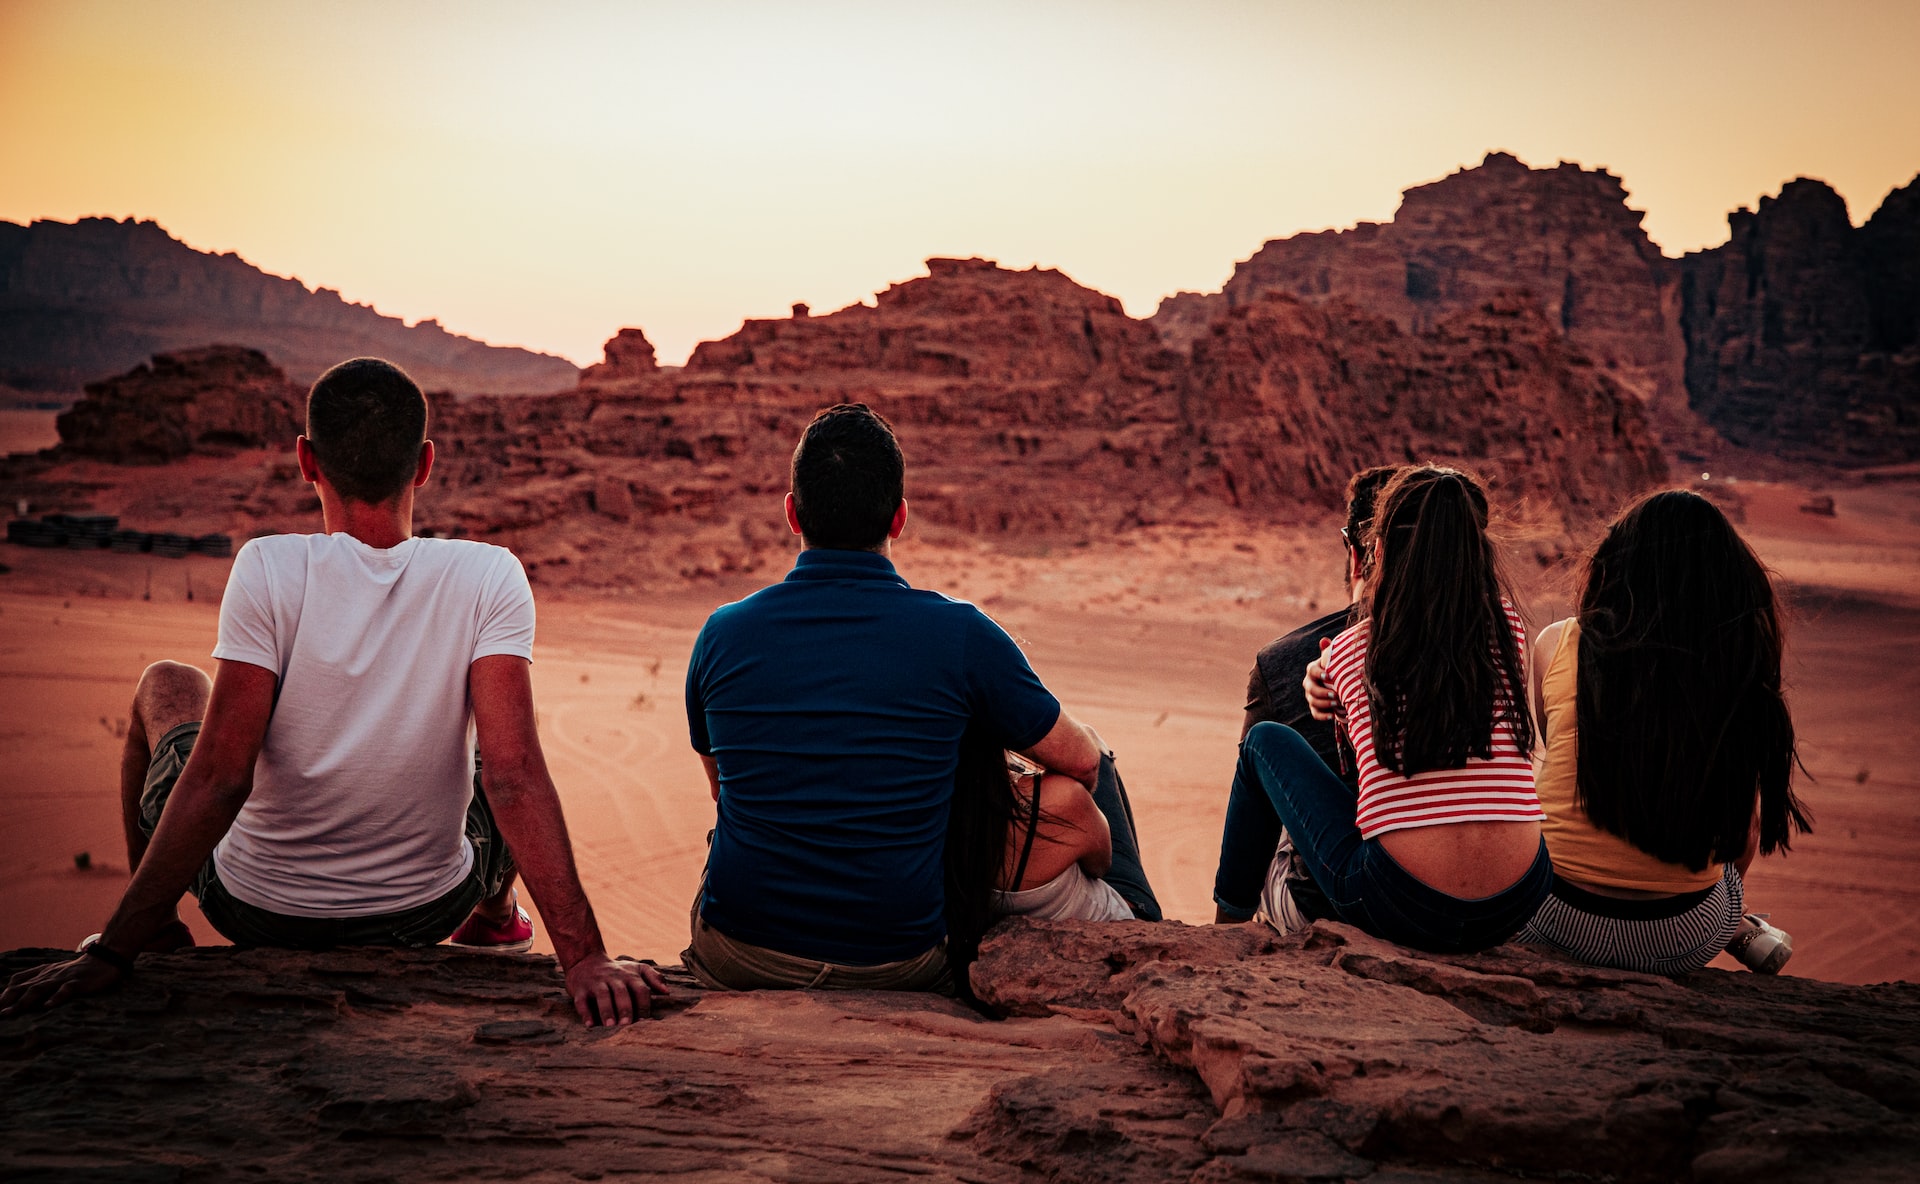 Movies Filmed in Wadi Rum- The views add to the movie's grandeur, Wadi Rum